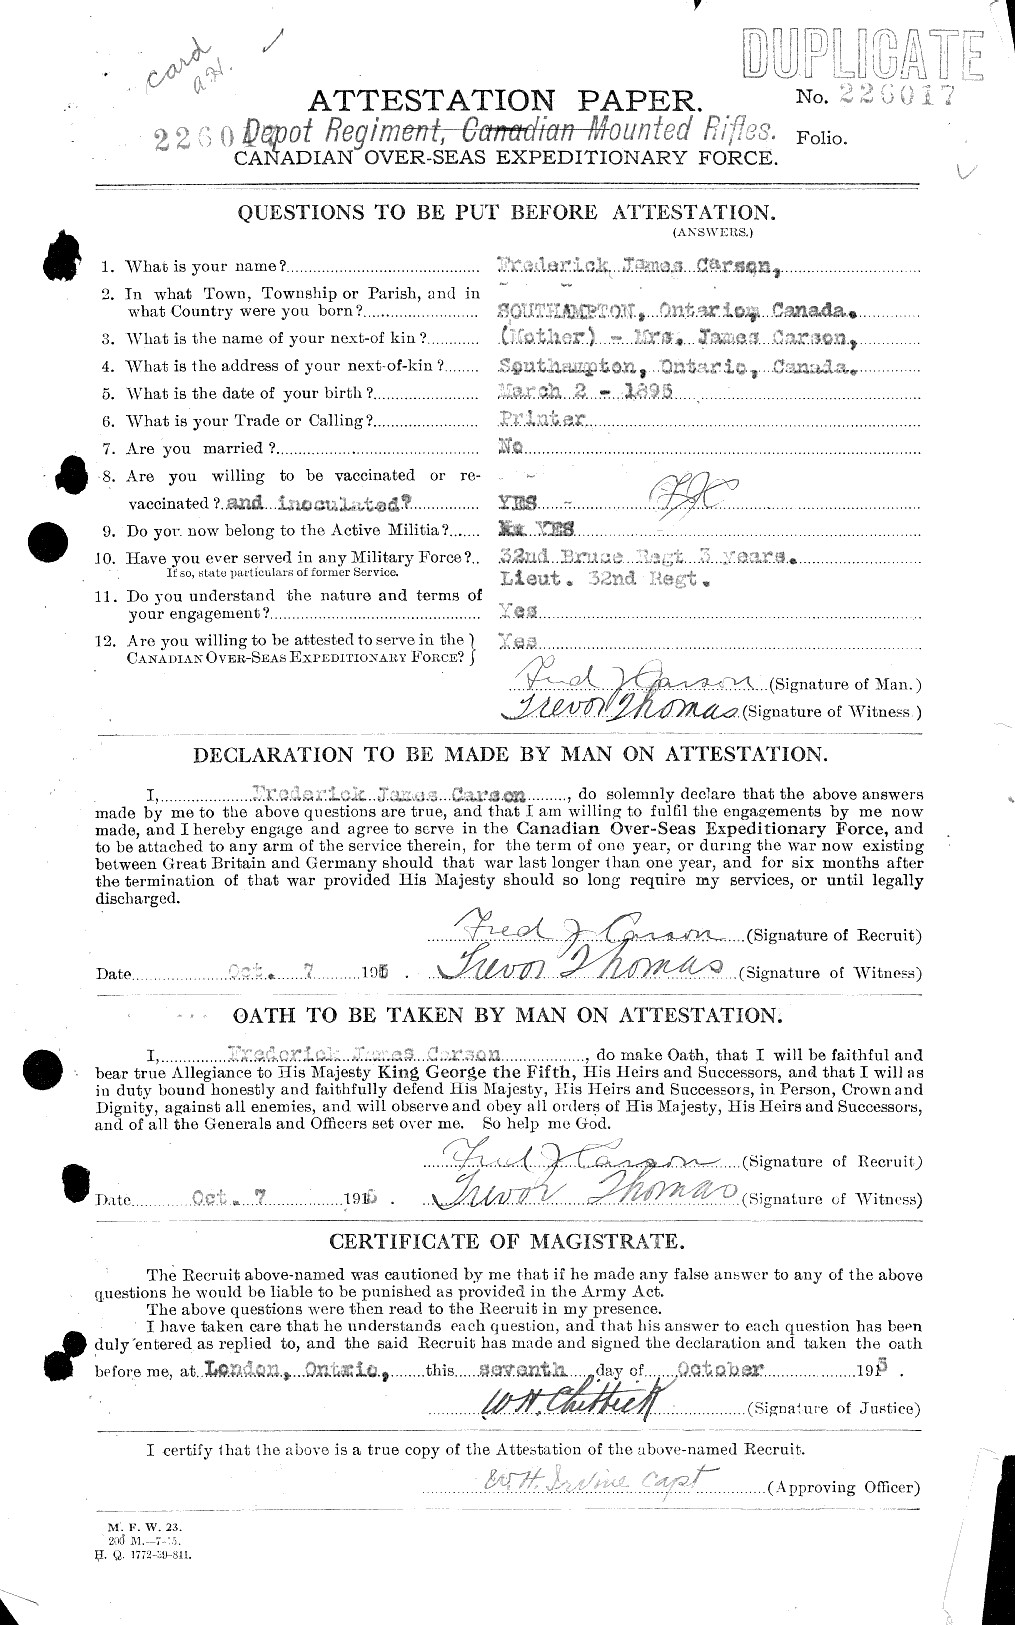 Dossiers du Personnel de la Première Guerre mondiale - CEC 010737a